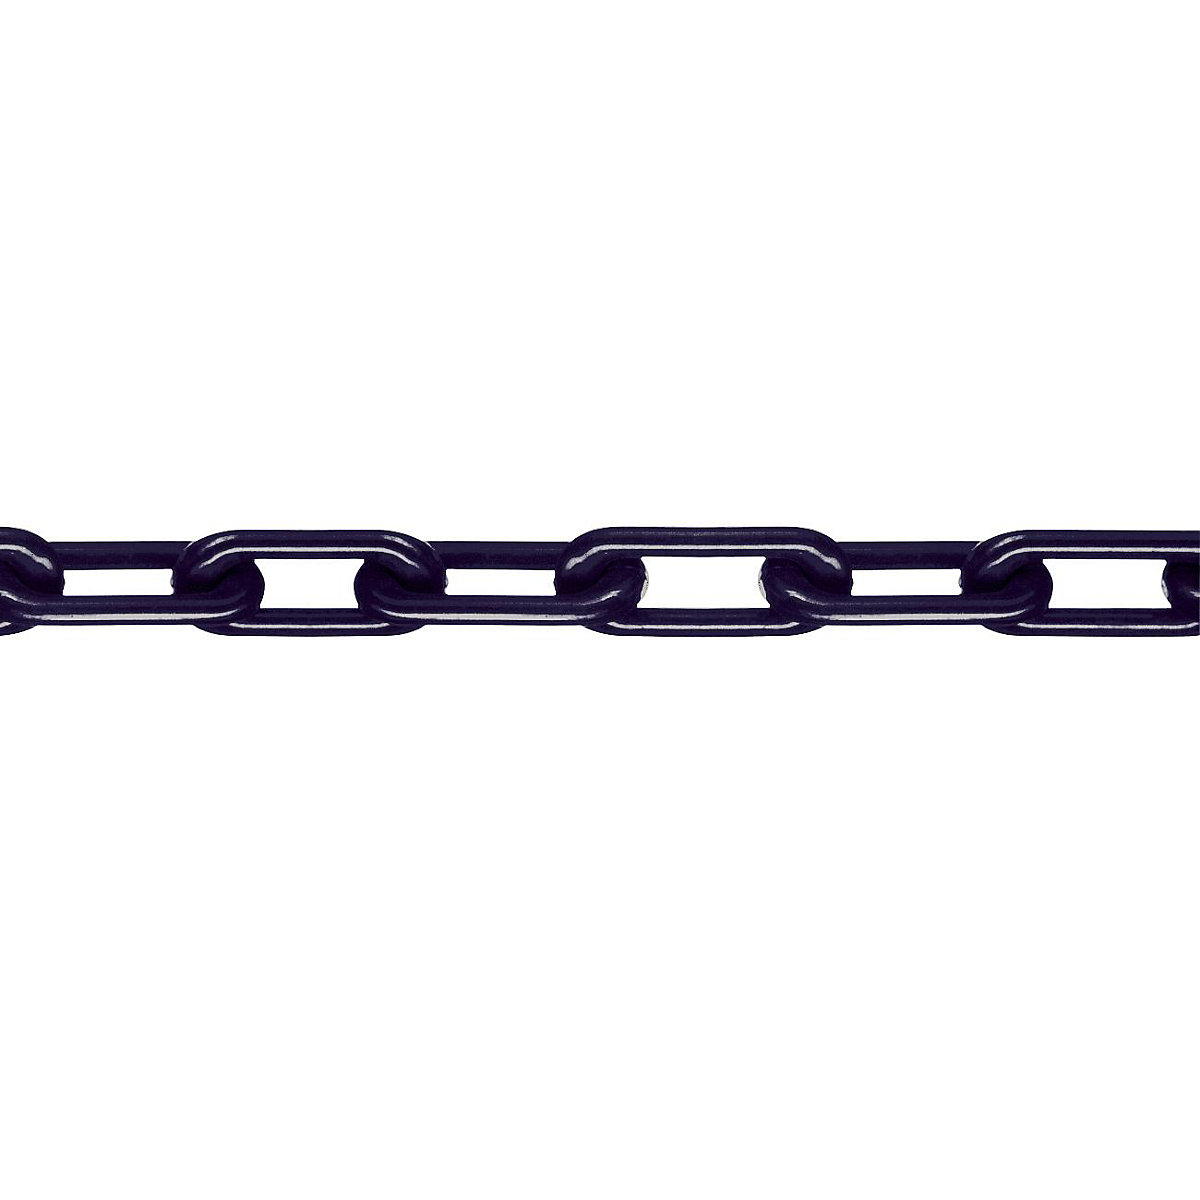 Chaîne en nylon, classe MNK 8, longueur d'épaulement 25 m, noir, 4 pièces et +-6